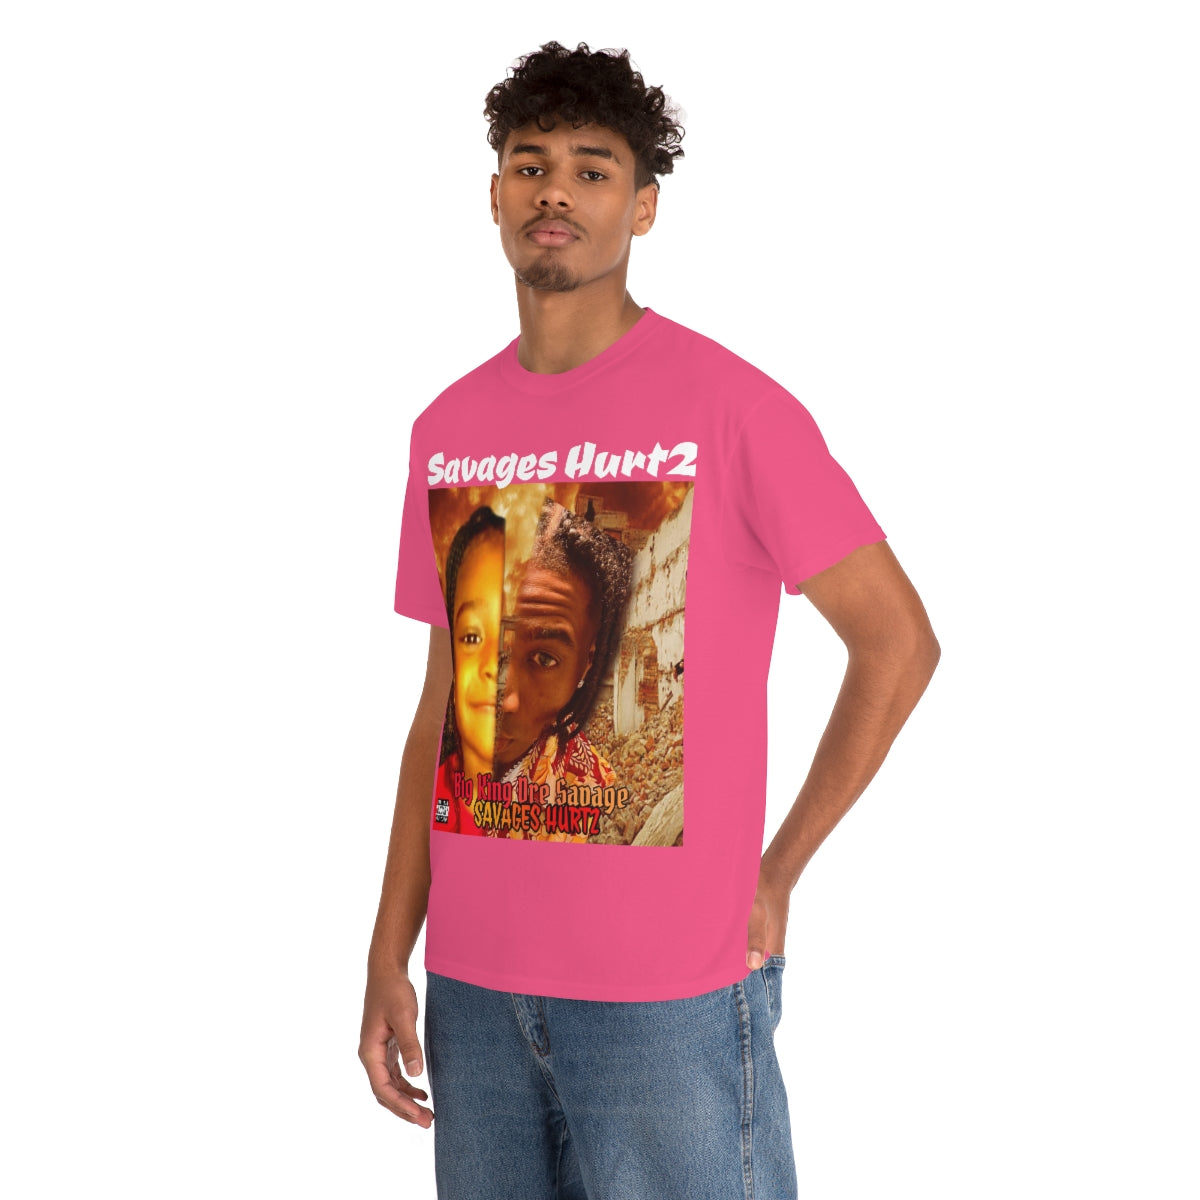 Big King Dre Savage (Savages Hurt2 Album Shirt)